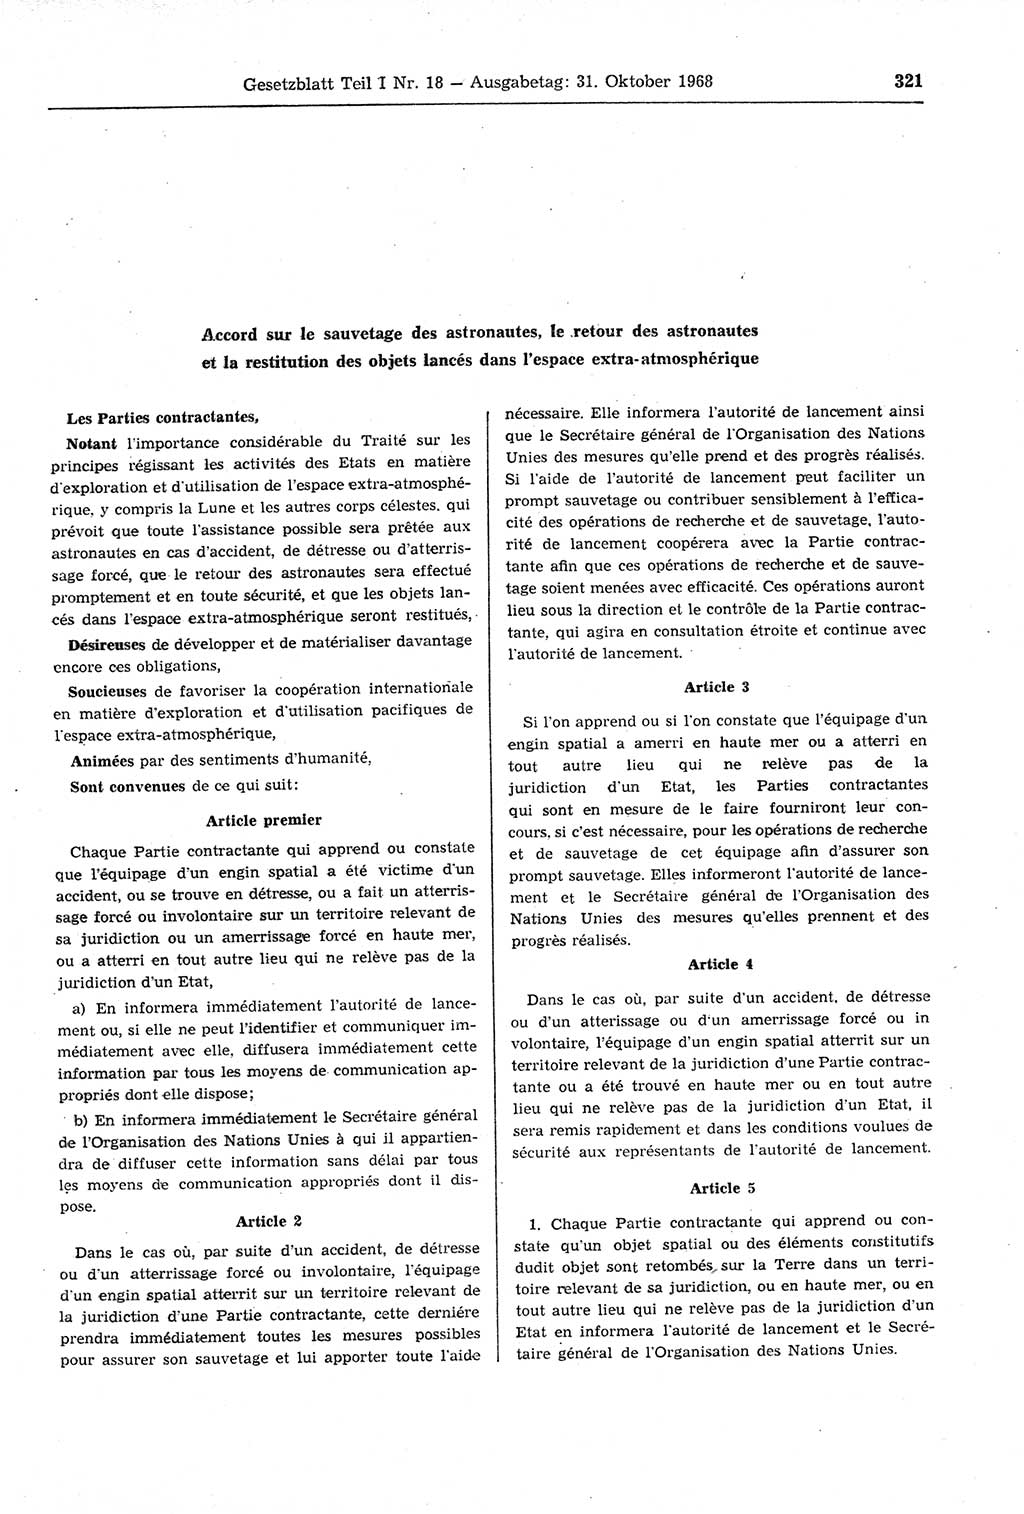 Gesetzblatt (GBl.) der Deutschen Demokratischen Republik (DDR) Teil Ⅰ 1968, Seite 321 (GBl. DDR Ⅰ 1968, S. 321)